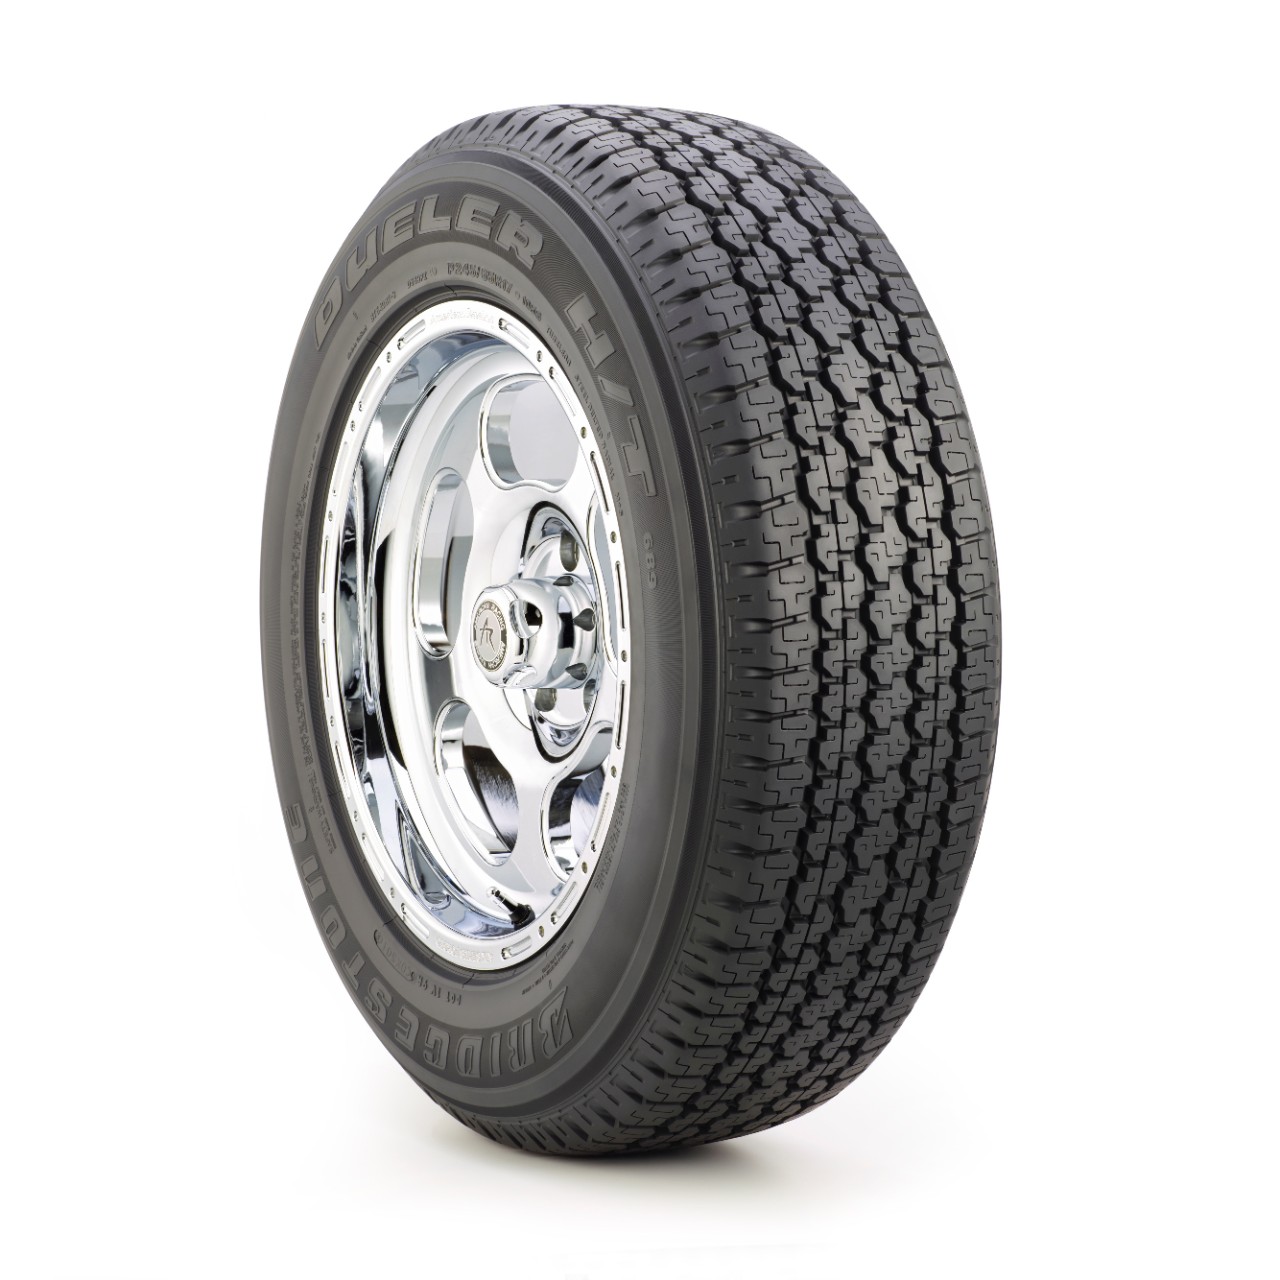 Gomme Nuove Bridgestone 205/80 R16 104T D689 pneumatici nuovi Estivo